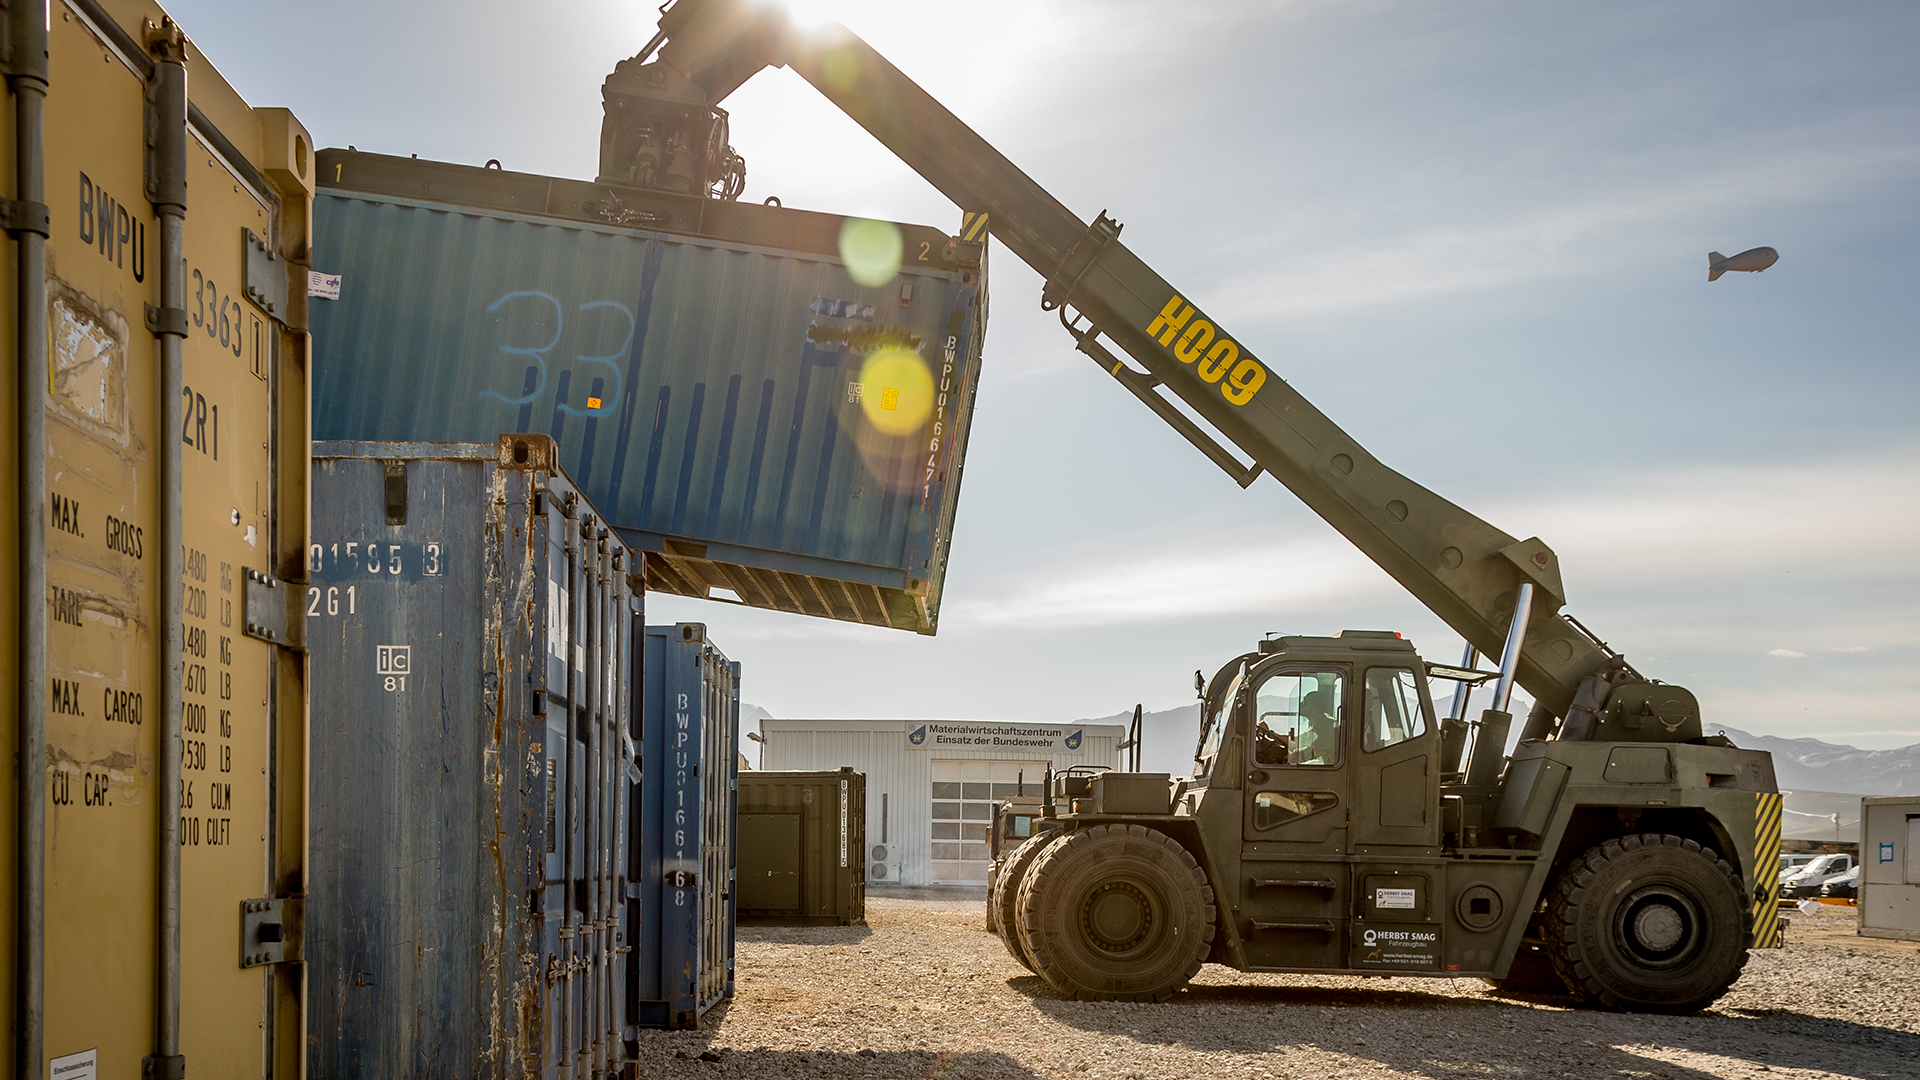 Containerstapler vom Typ Hyster auf dem Gelände der Materialschleuse Resolute Support im Camp Marmal in Afghanistan.  | dpa